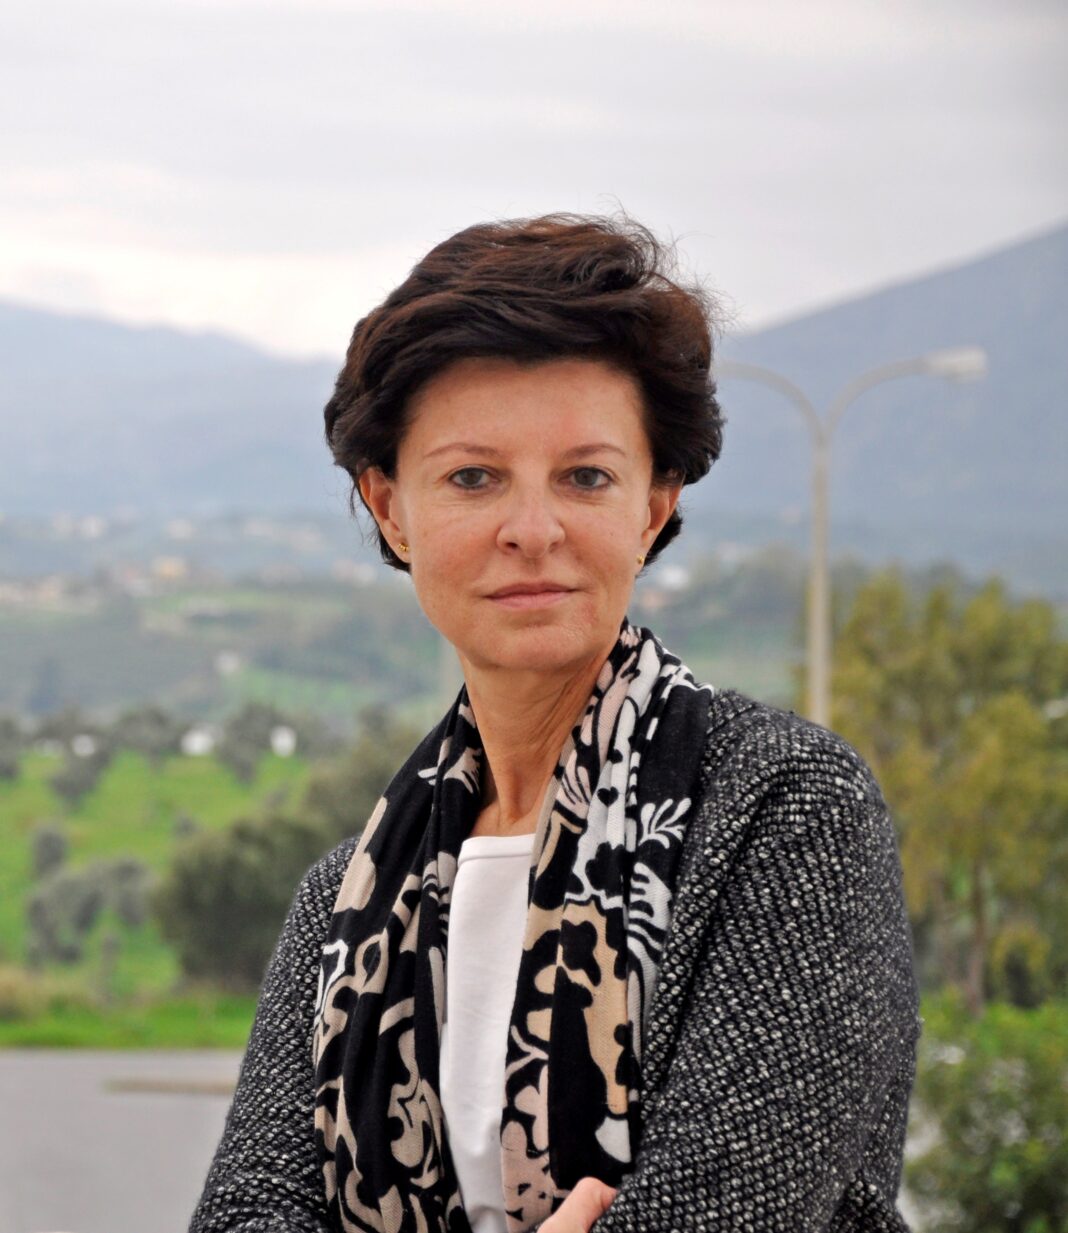 Η ερευνήτρια του ΙΤΕ καθ. Ηλέκτρα Γκιζελή εκλέγεται μέλος του Ευρωπαϊκού Οργανισμού Μοριακής Βιολογίας